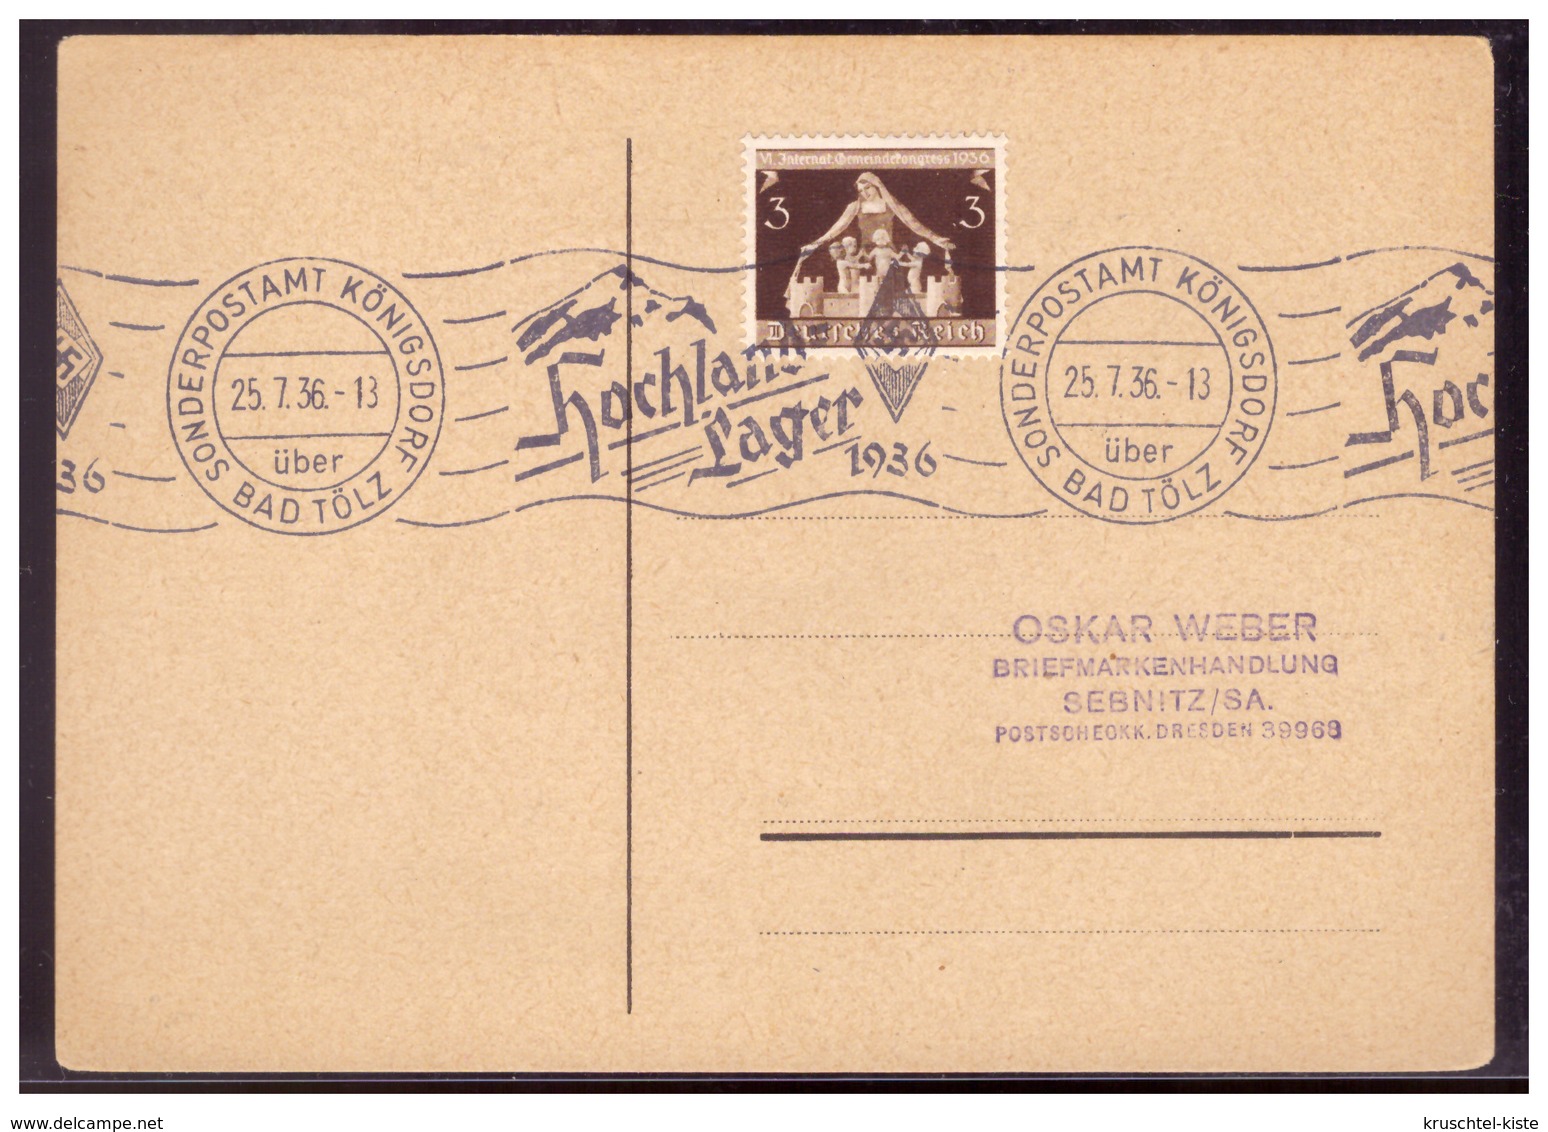 Dt- Reich (006377) Postkarte Mit Rollstempel Hochlandlager HJ 1936, Sonderpostamt Königsdorf über Bad Tölz Vom 25.7.1936 - Briefe U. Dokumente